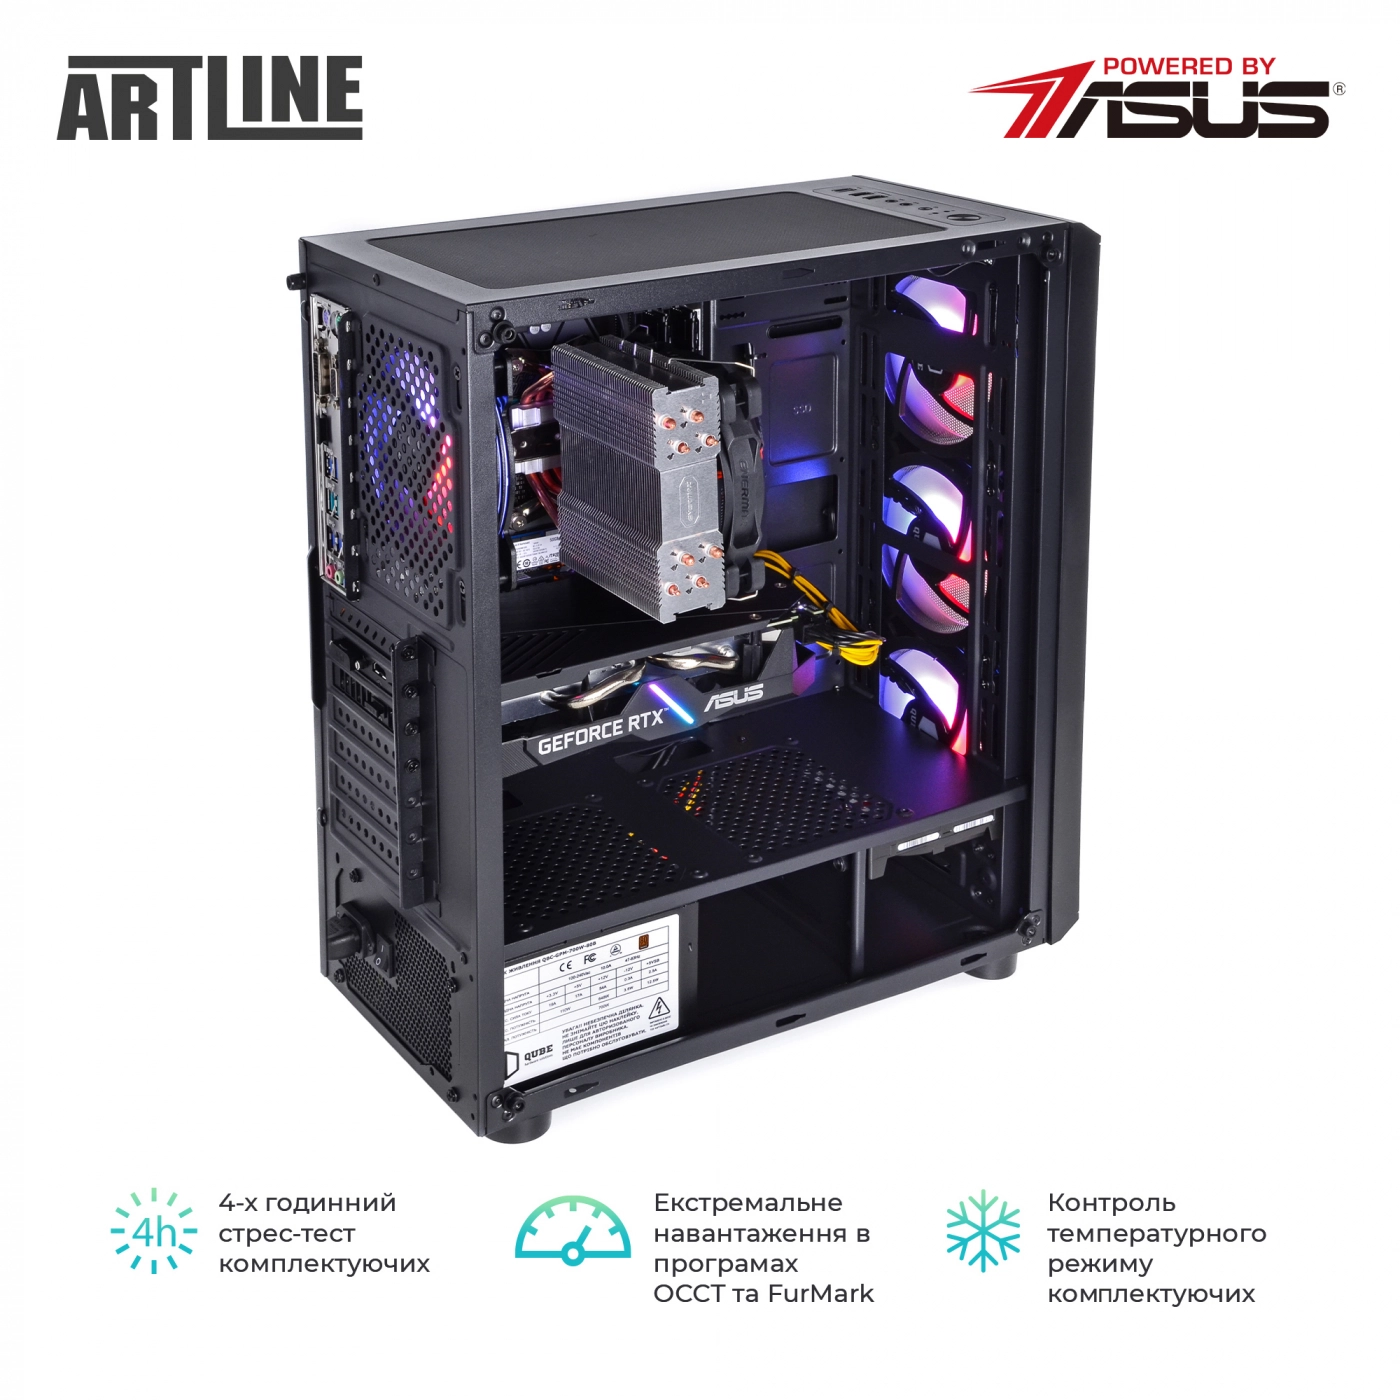 Купить Компьютер ARTLINE Gaming X75v55 - фото 8